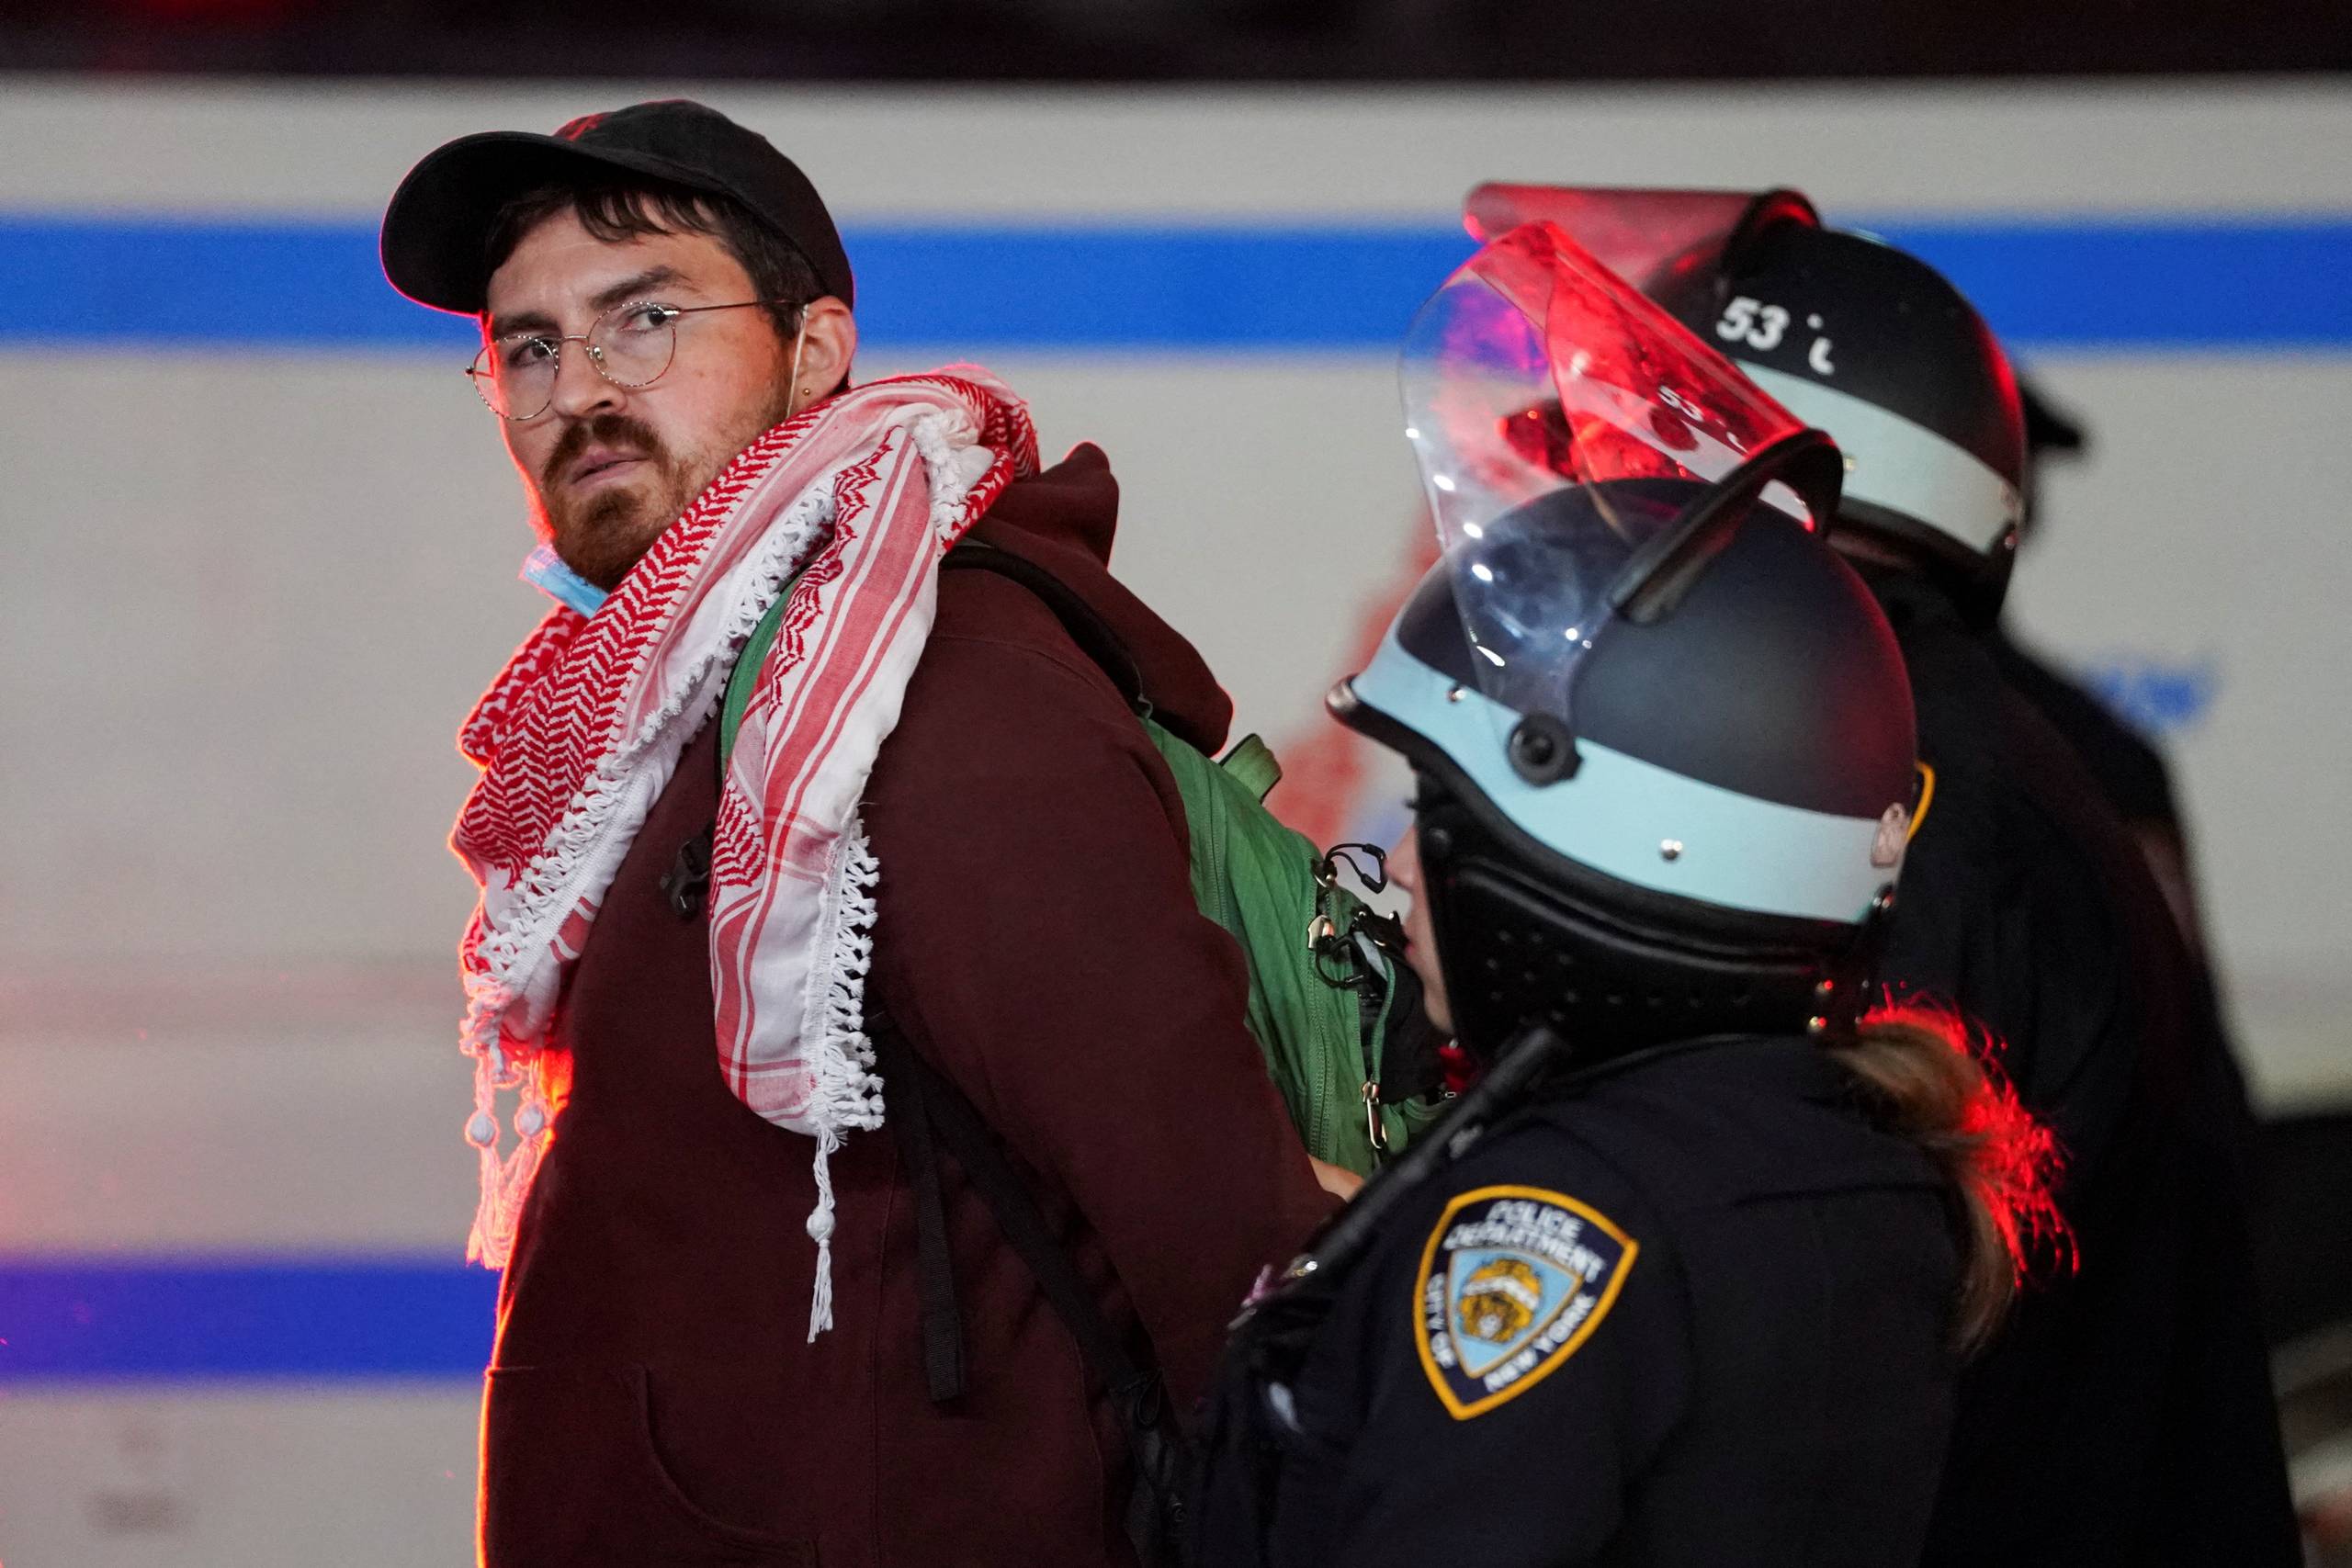 En demonstrant ved Columbia University bliver ført væk af amerikanske betjente. Foto: David Dee Delgado/Reuters/Ritzau Scanpix